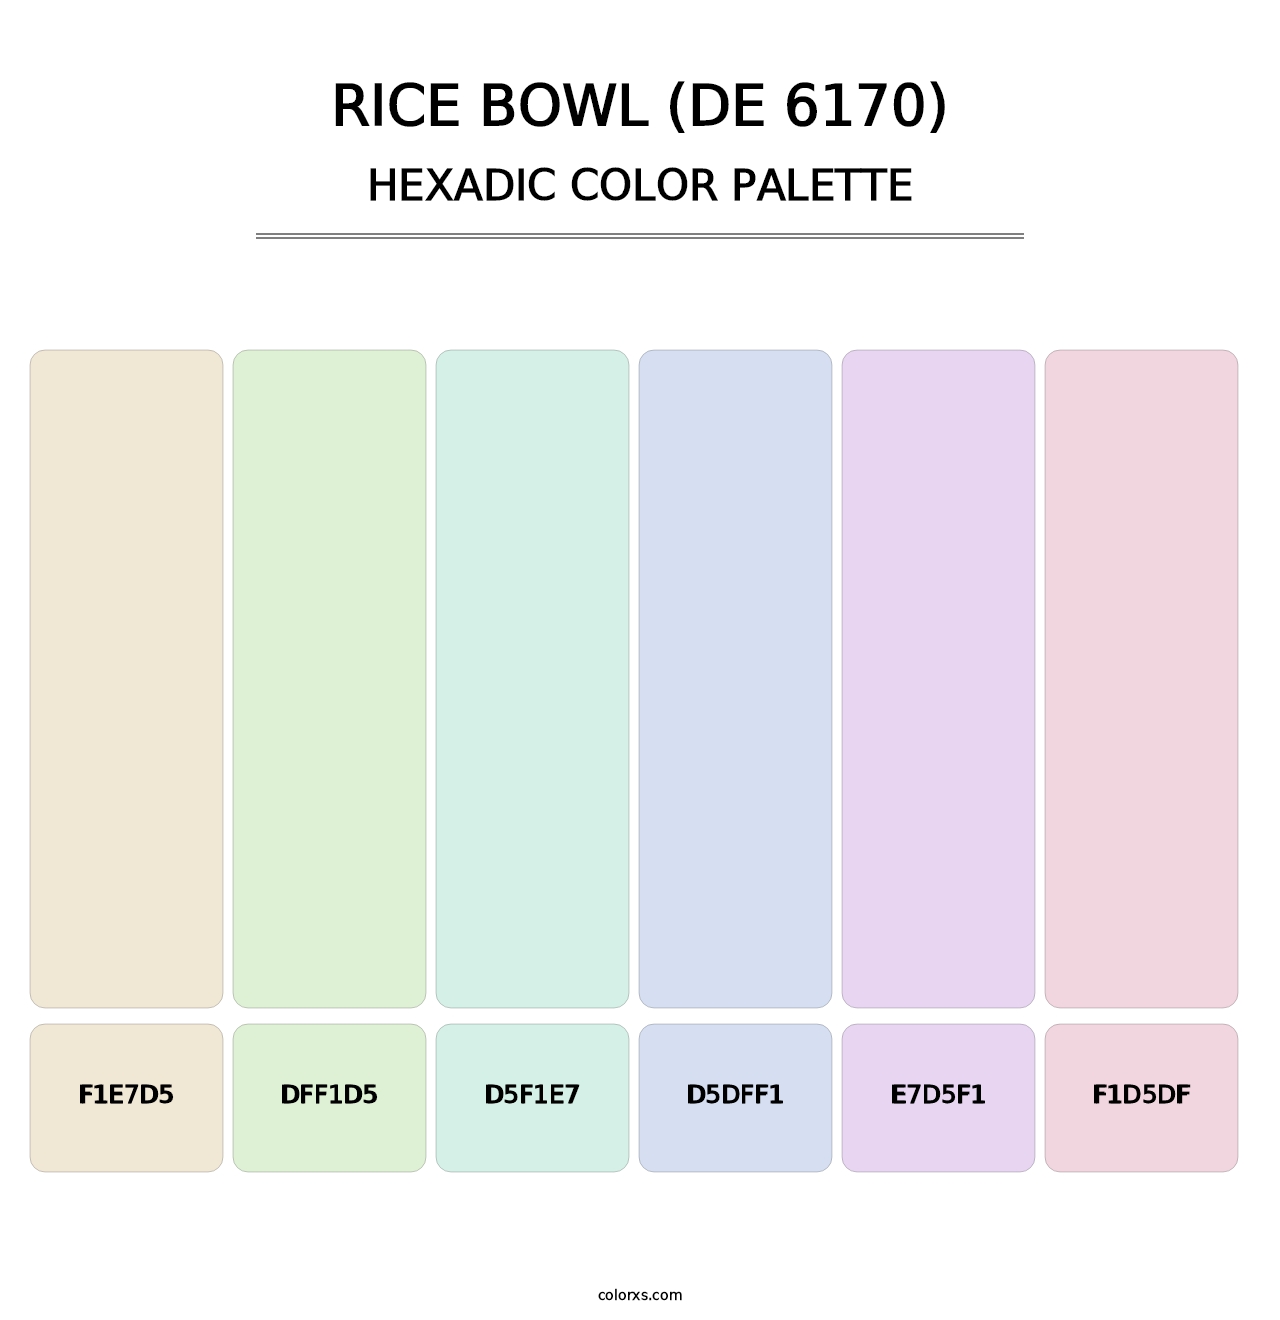 Rice Bowl (DE 6170) - Hexadic Color Palette